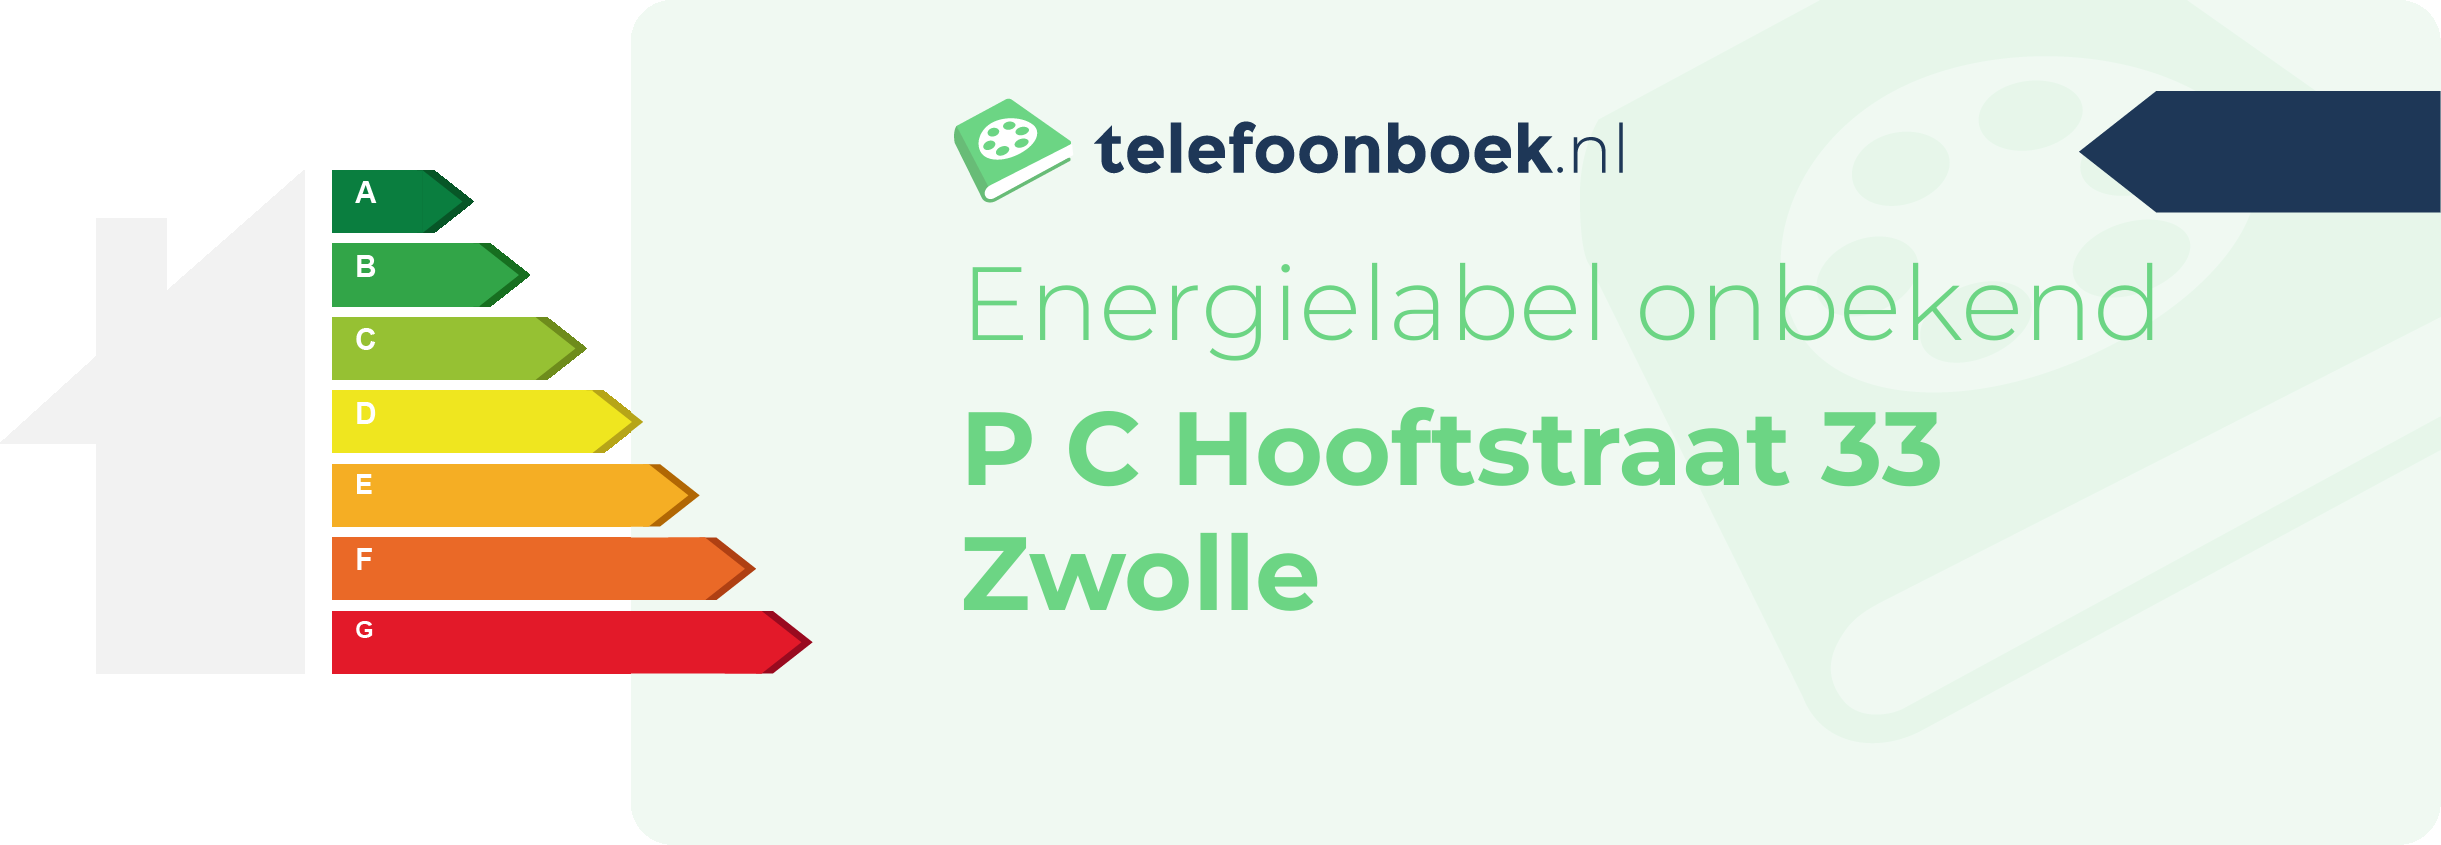 Energielabel P C Hooftstraat 33 Zwolle